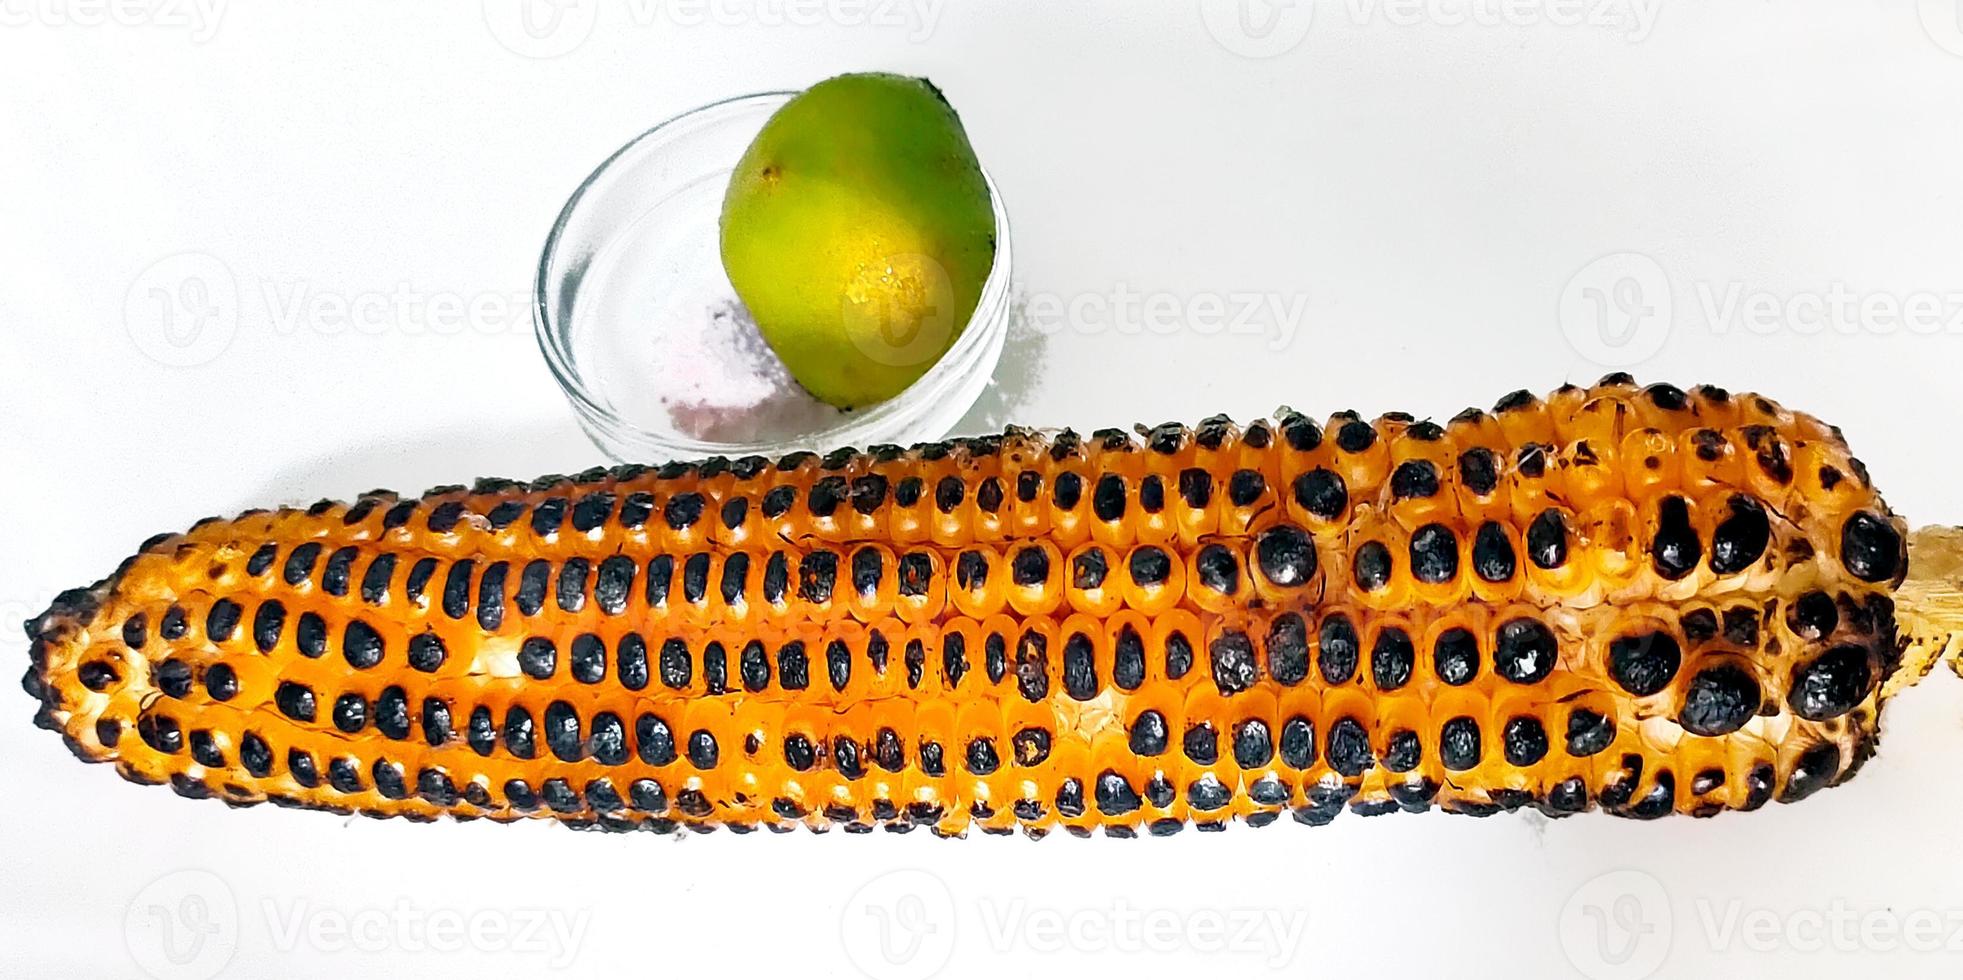 rostad liktornar, ett av de typisk gata livsmedel i Indien, uppäten med salt och citron. foto